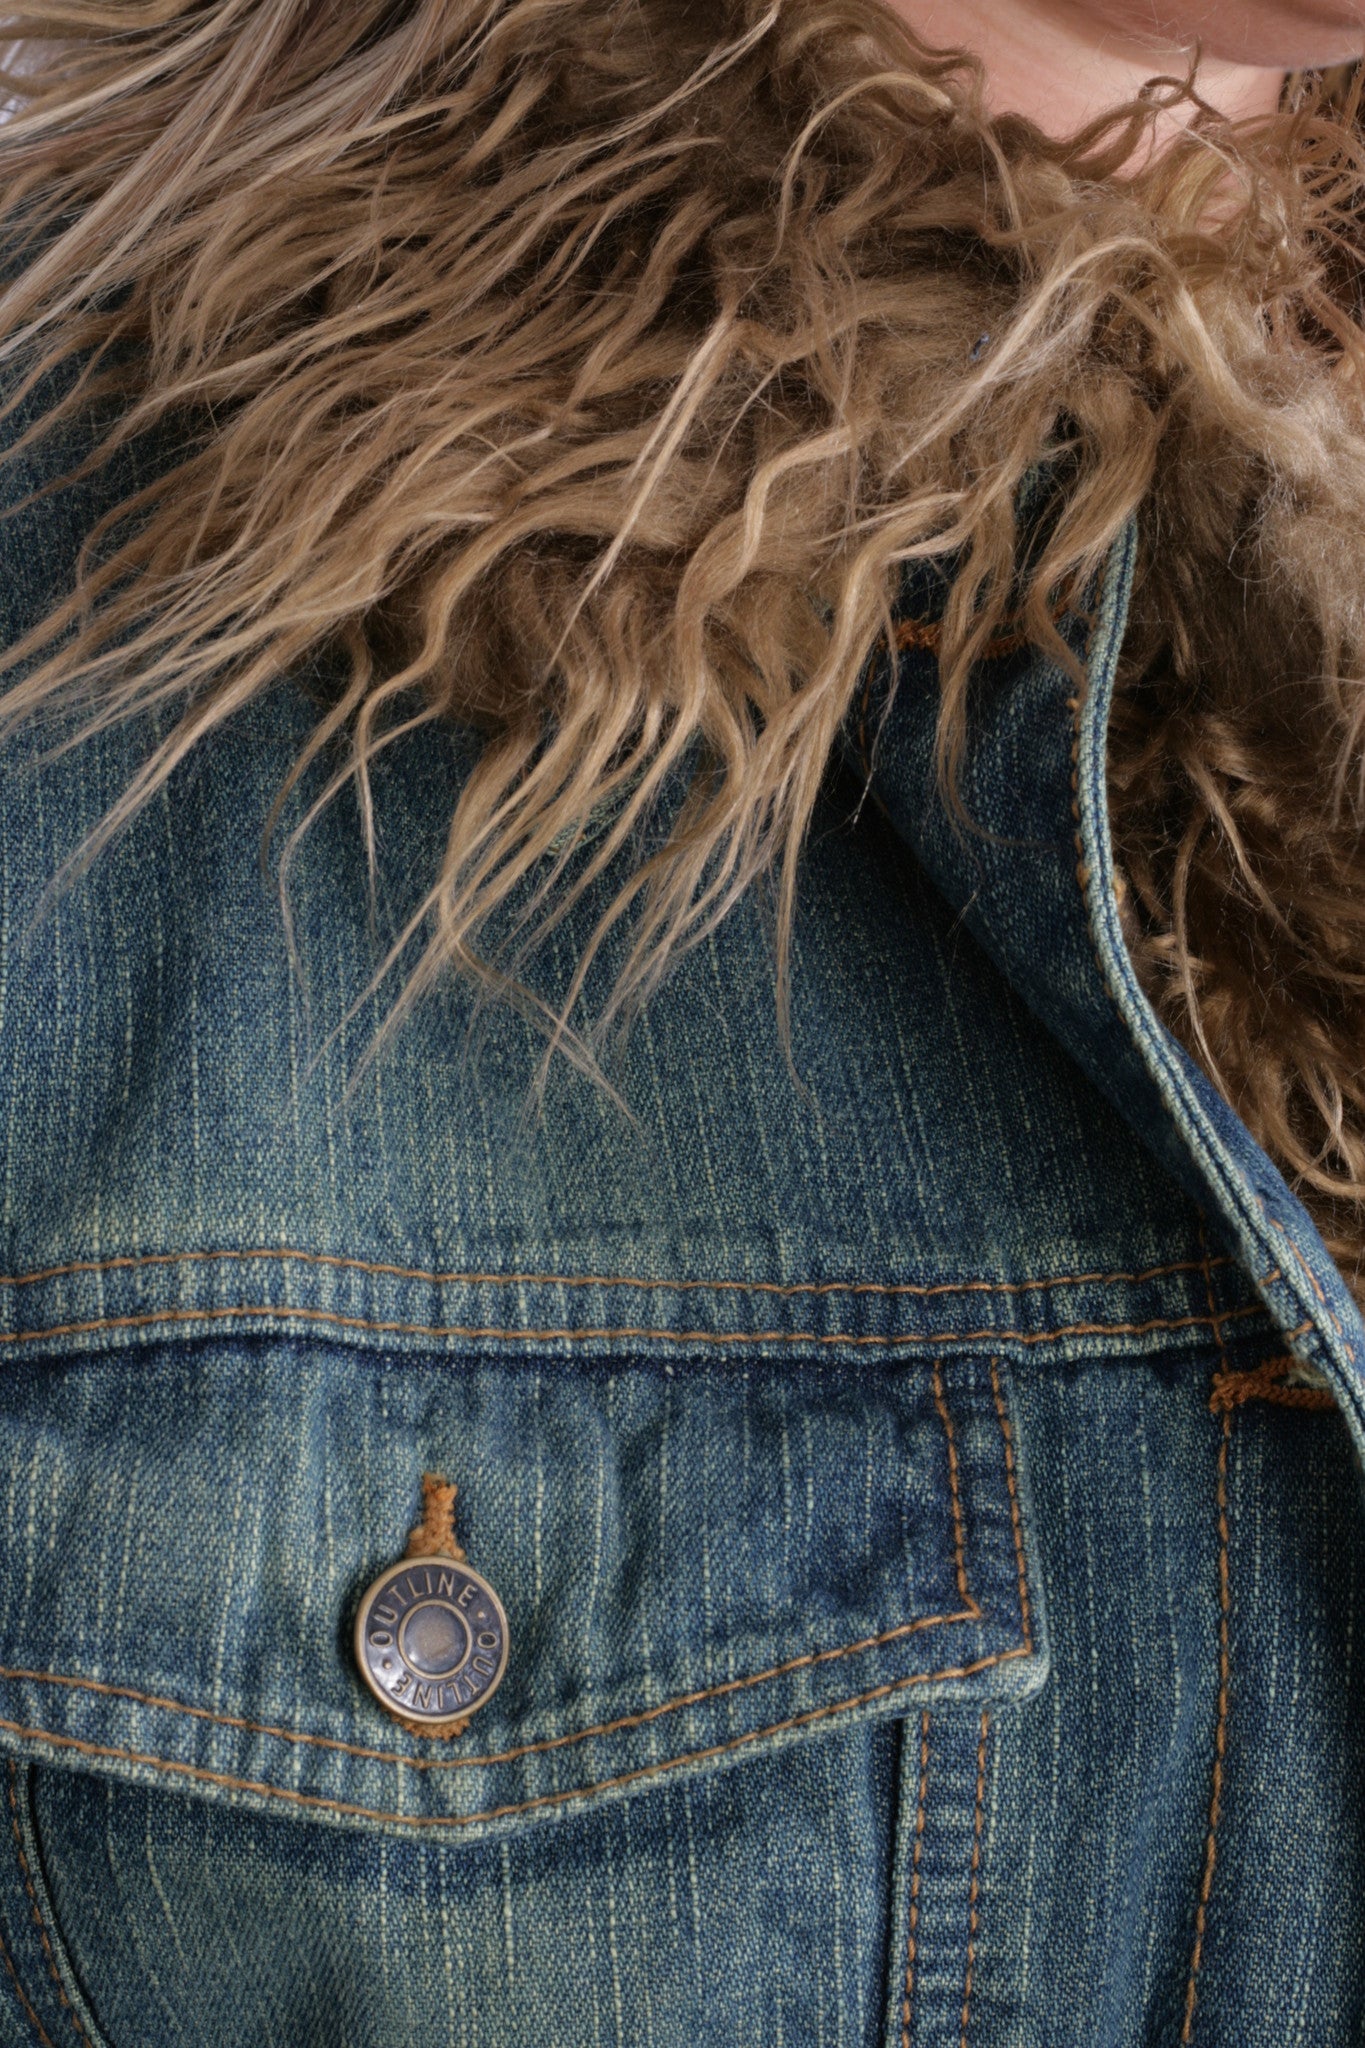 New Outline Women M Jacket Jeans Denim Fur Boho Vintage - RetrospectClothes